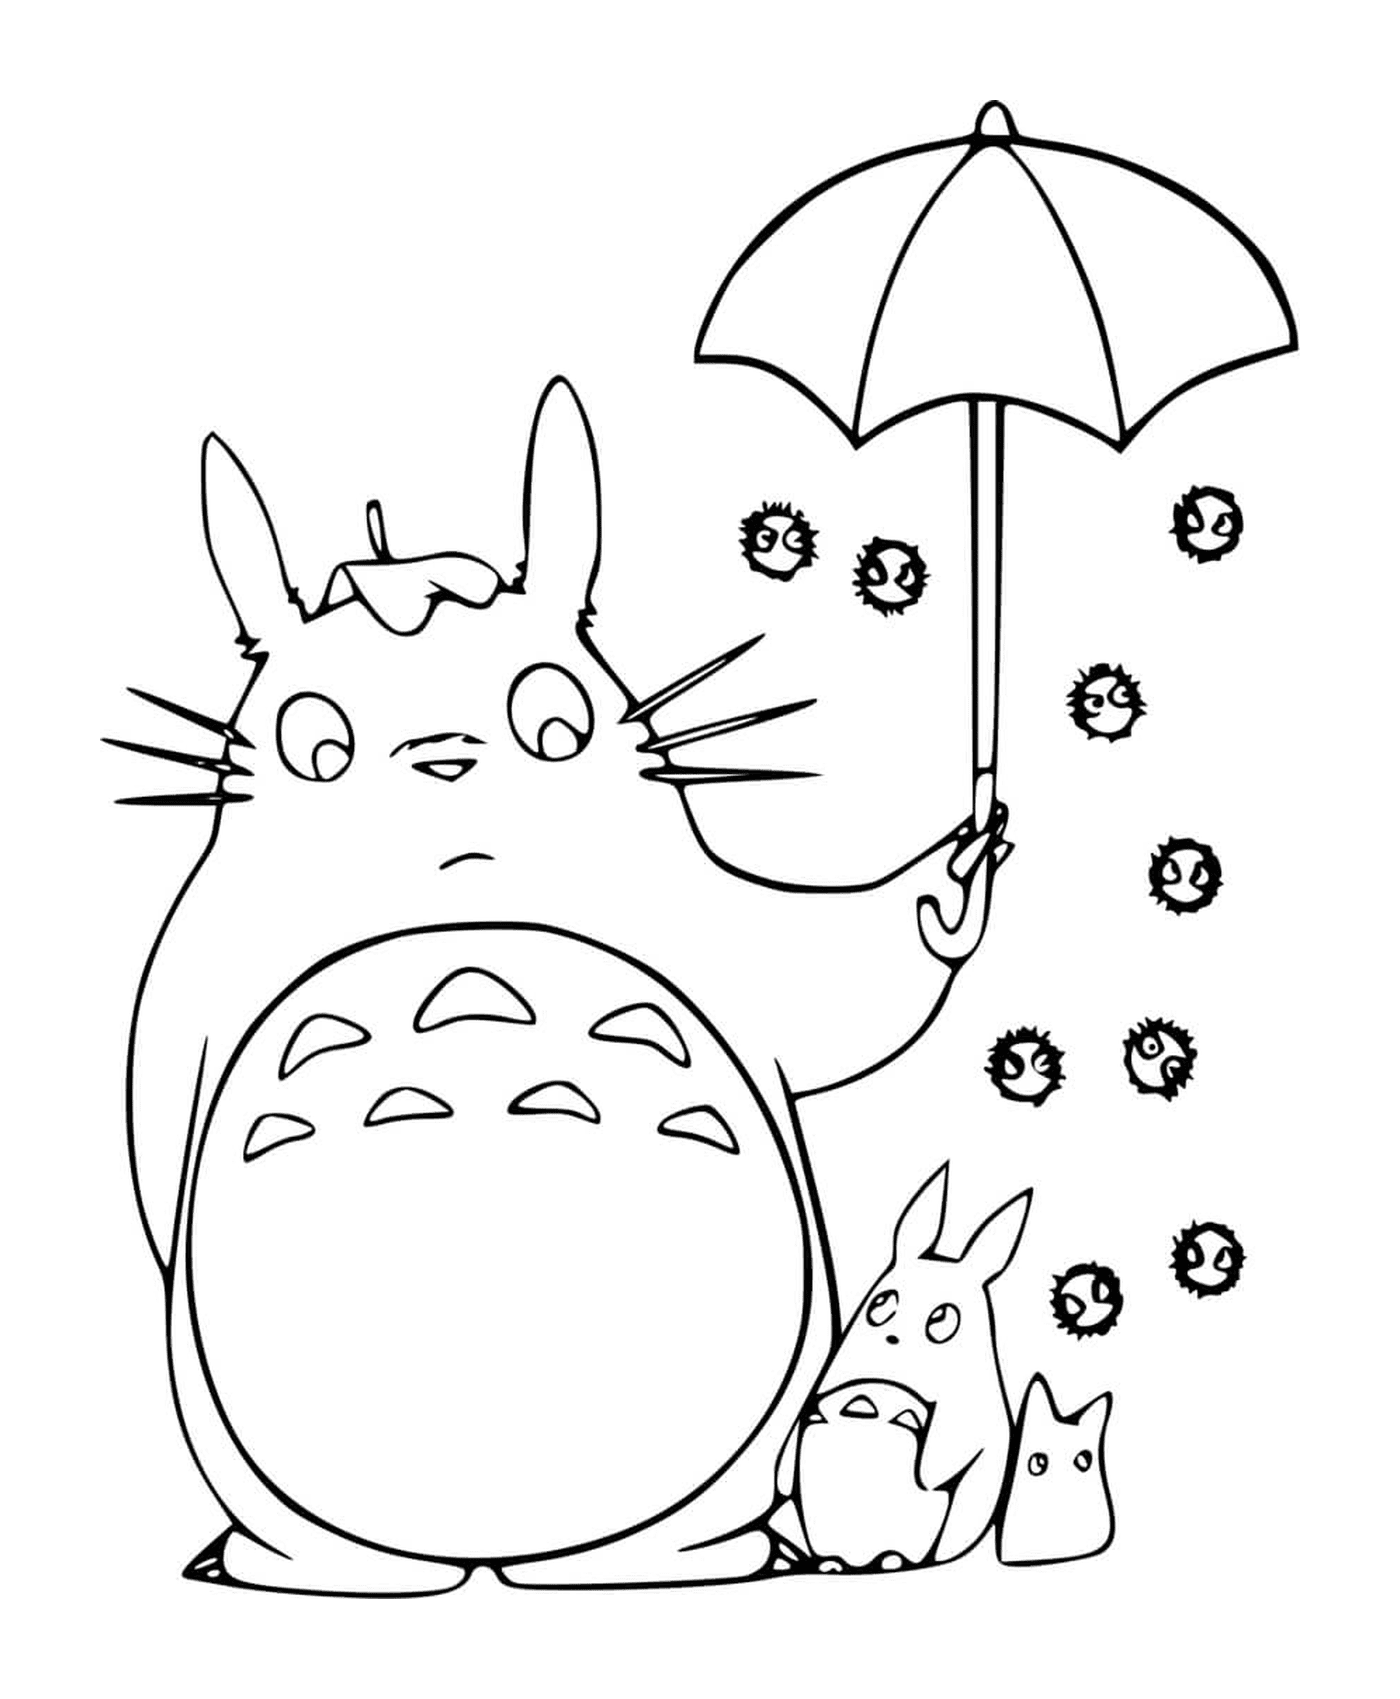  Totoro segurando um guarda-chuva aberto com uma criança 